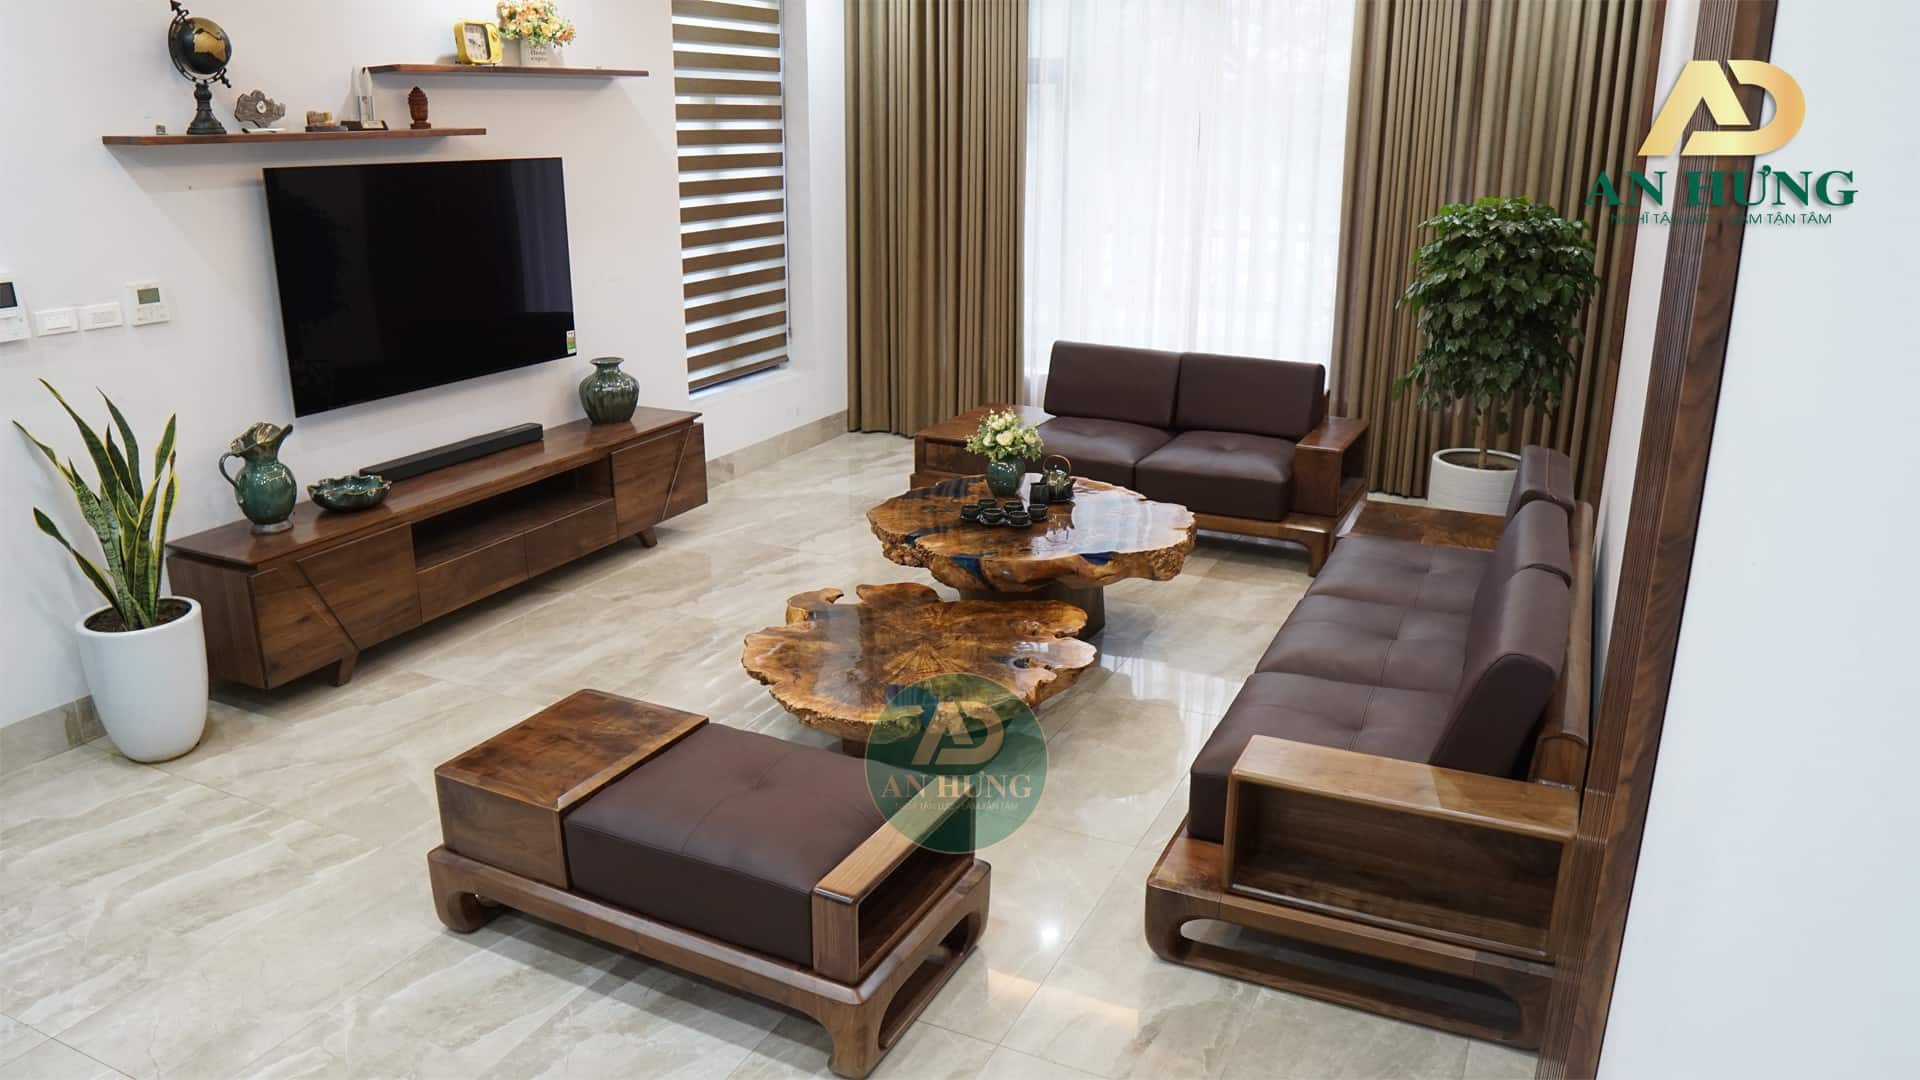 Sofa phòng khách sản xuất từ cây gỗ óc chó cao cấp